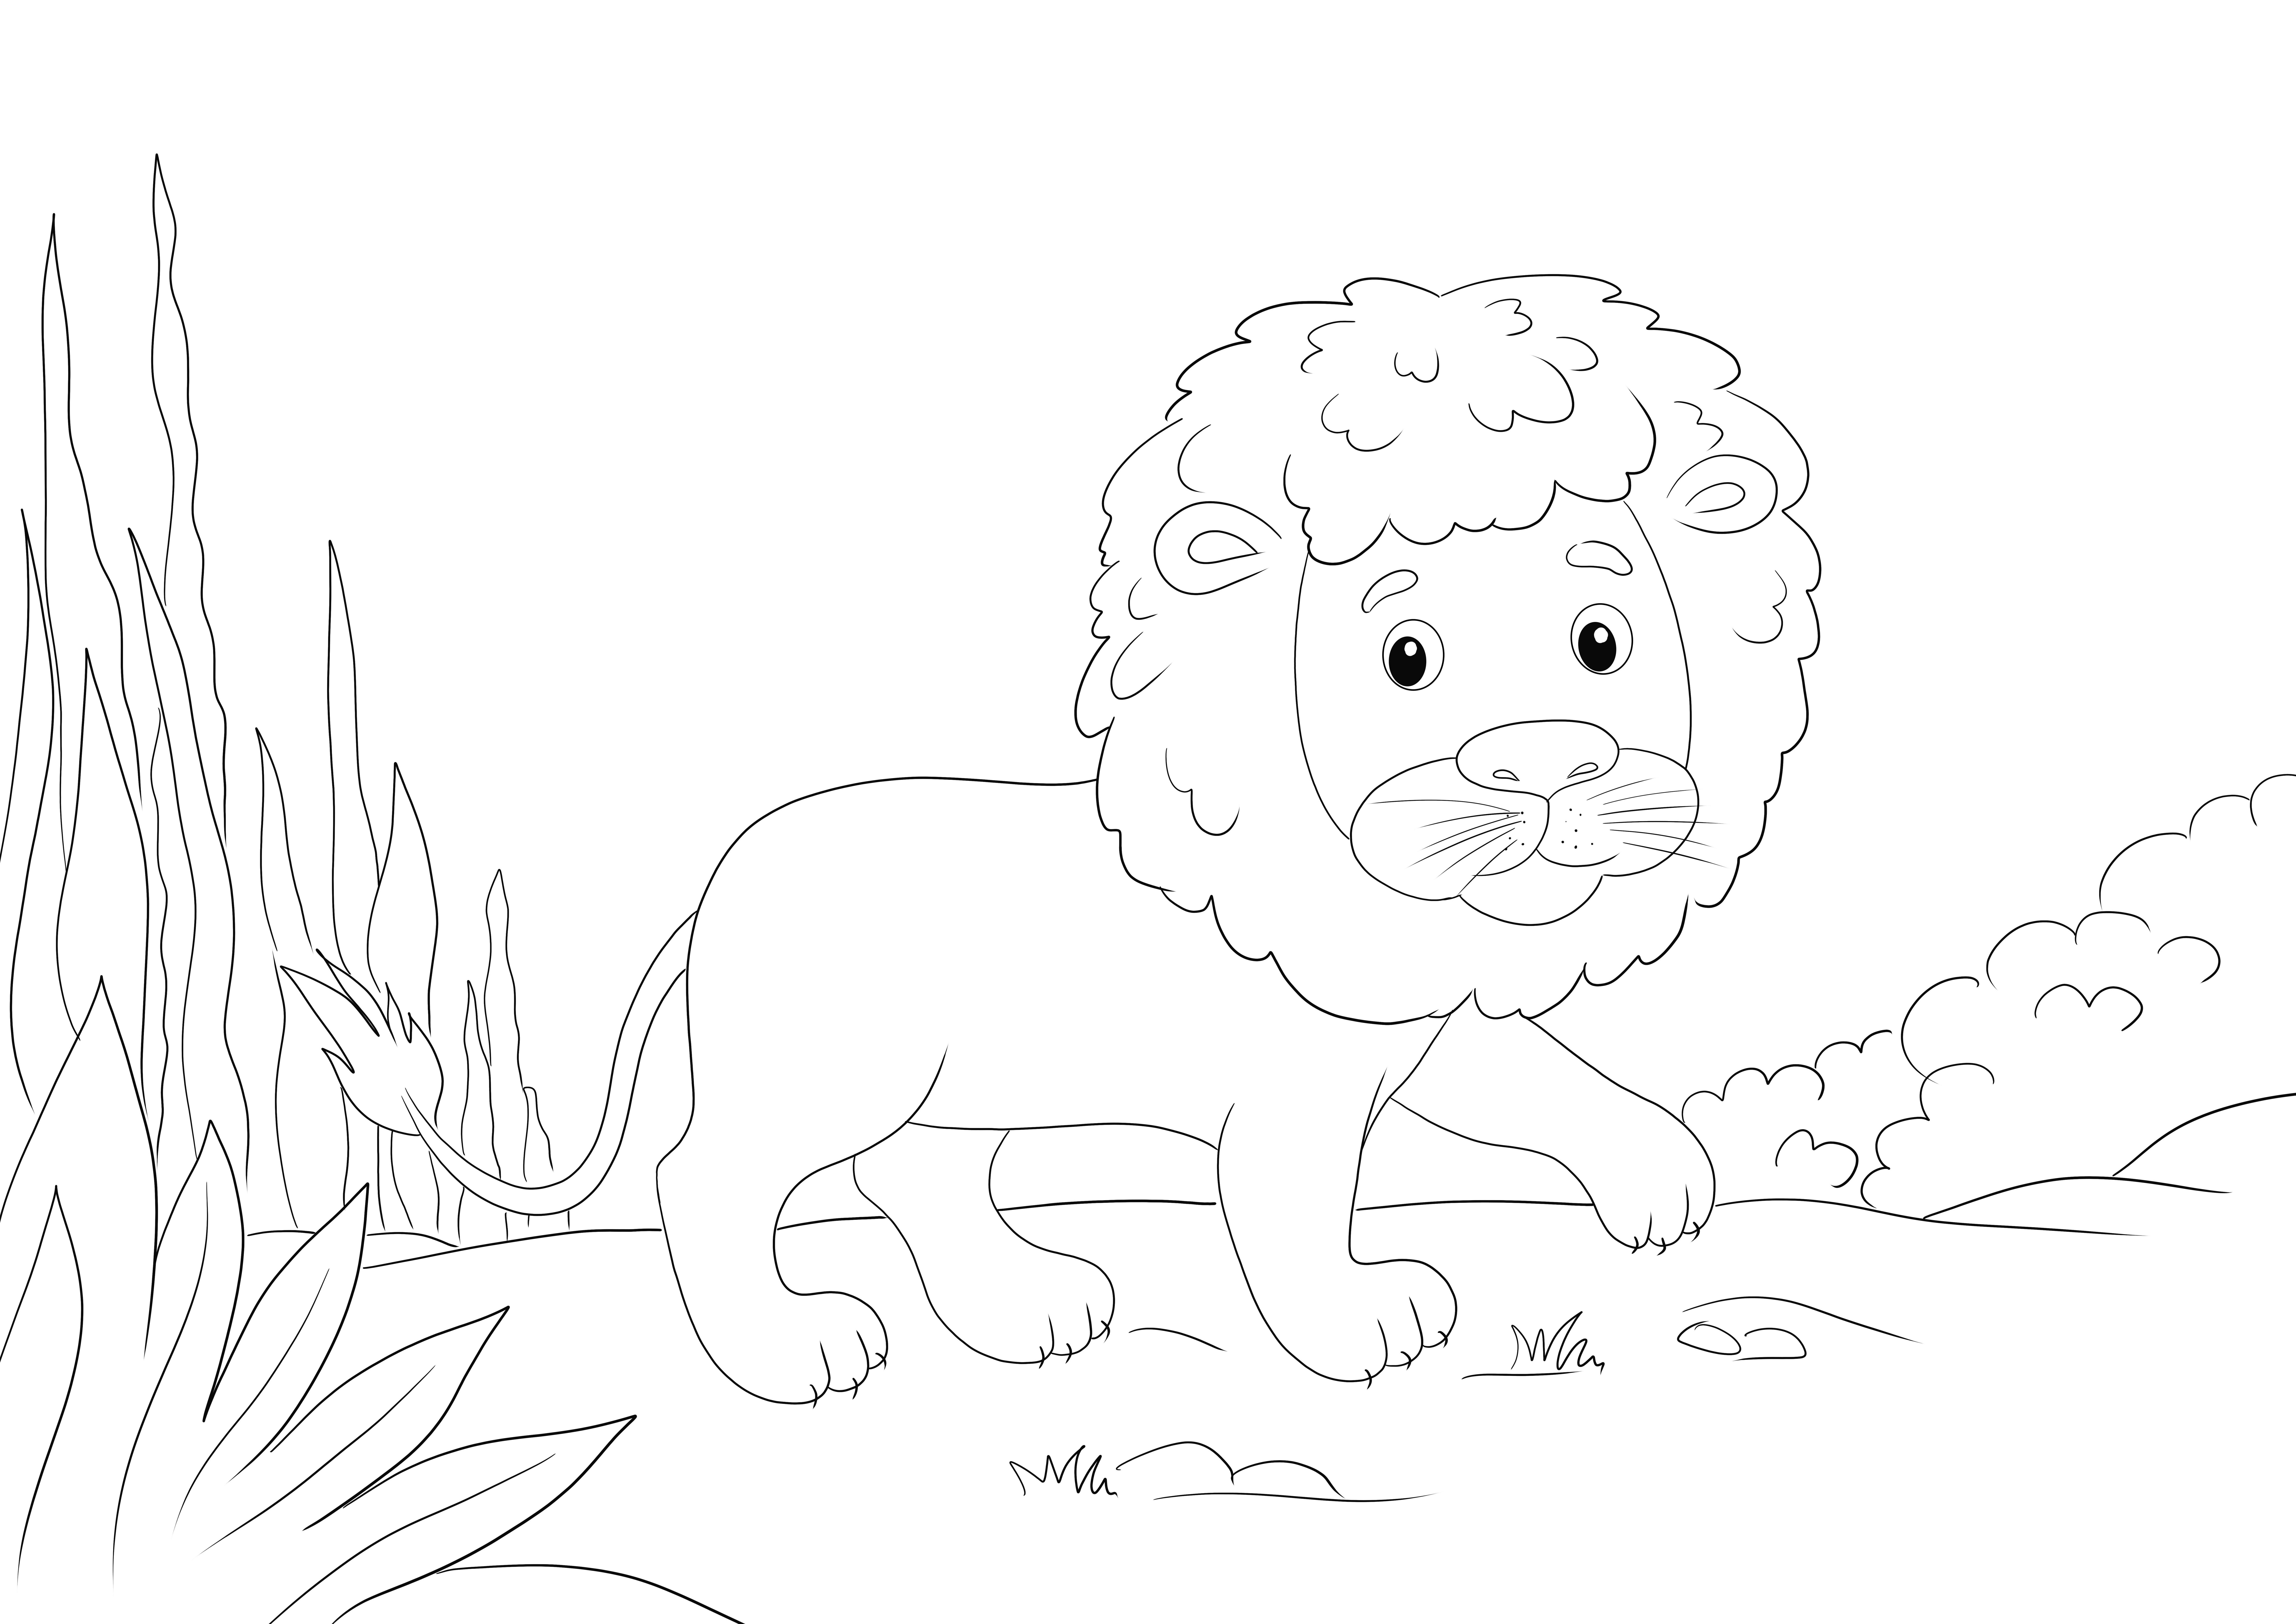 Een schattige leeuw die door de wildernis loopt, is klaar om bedrukt en gekleurd te worden kleurplaat